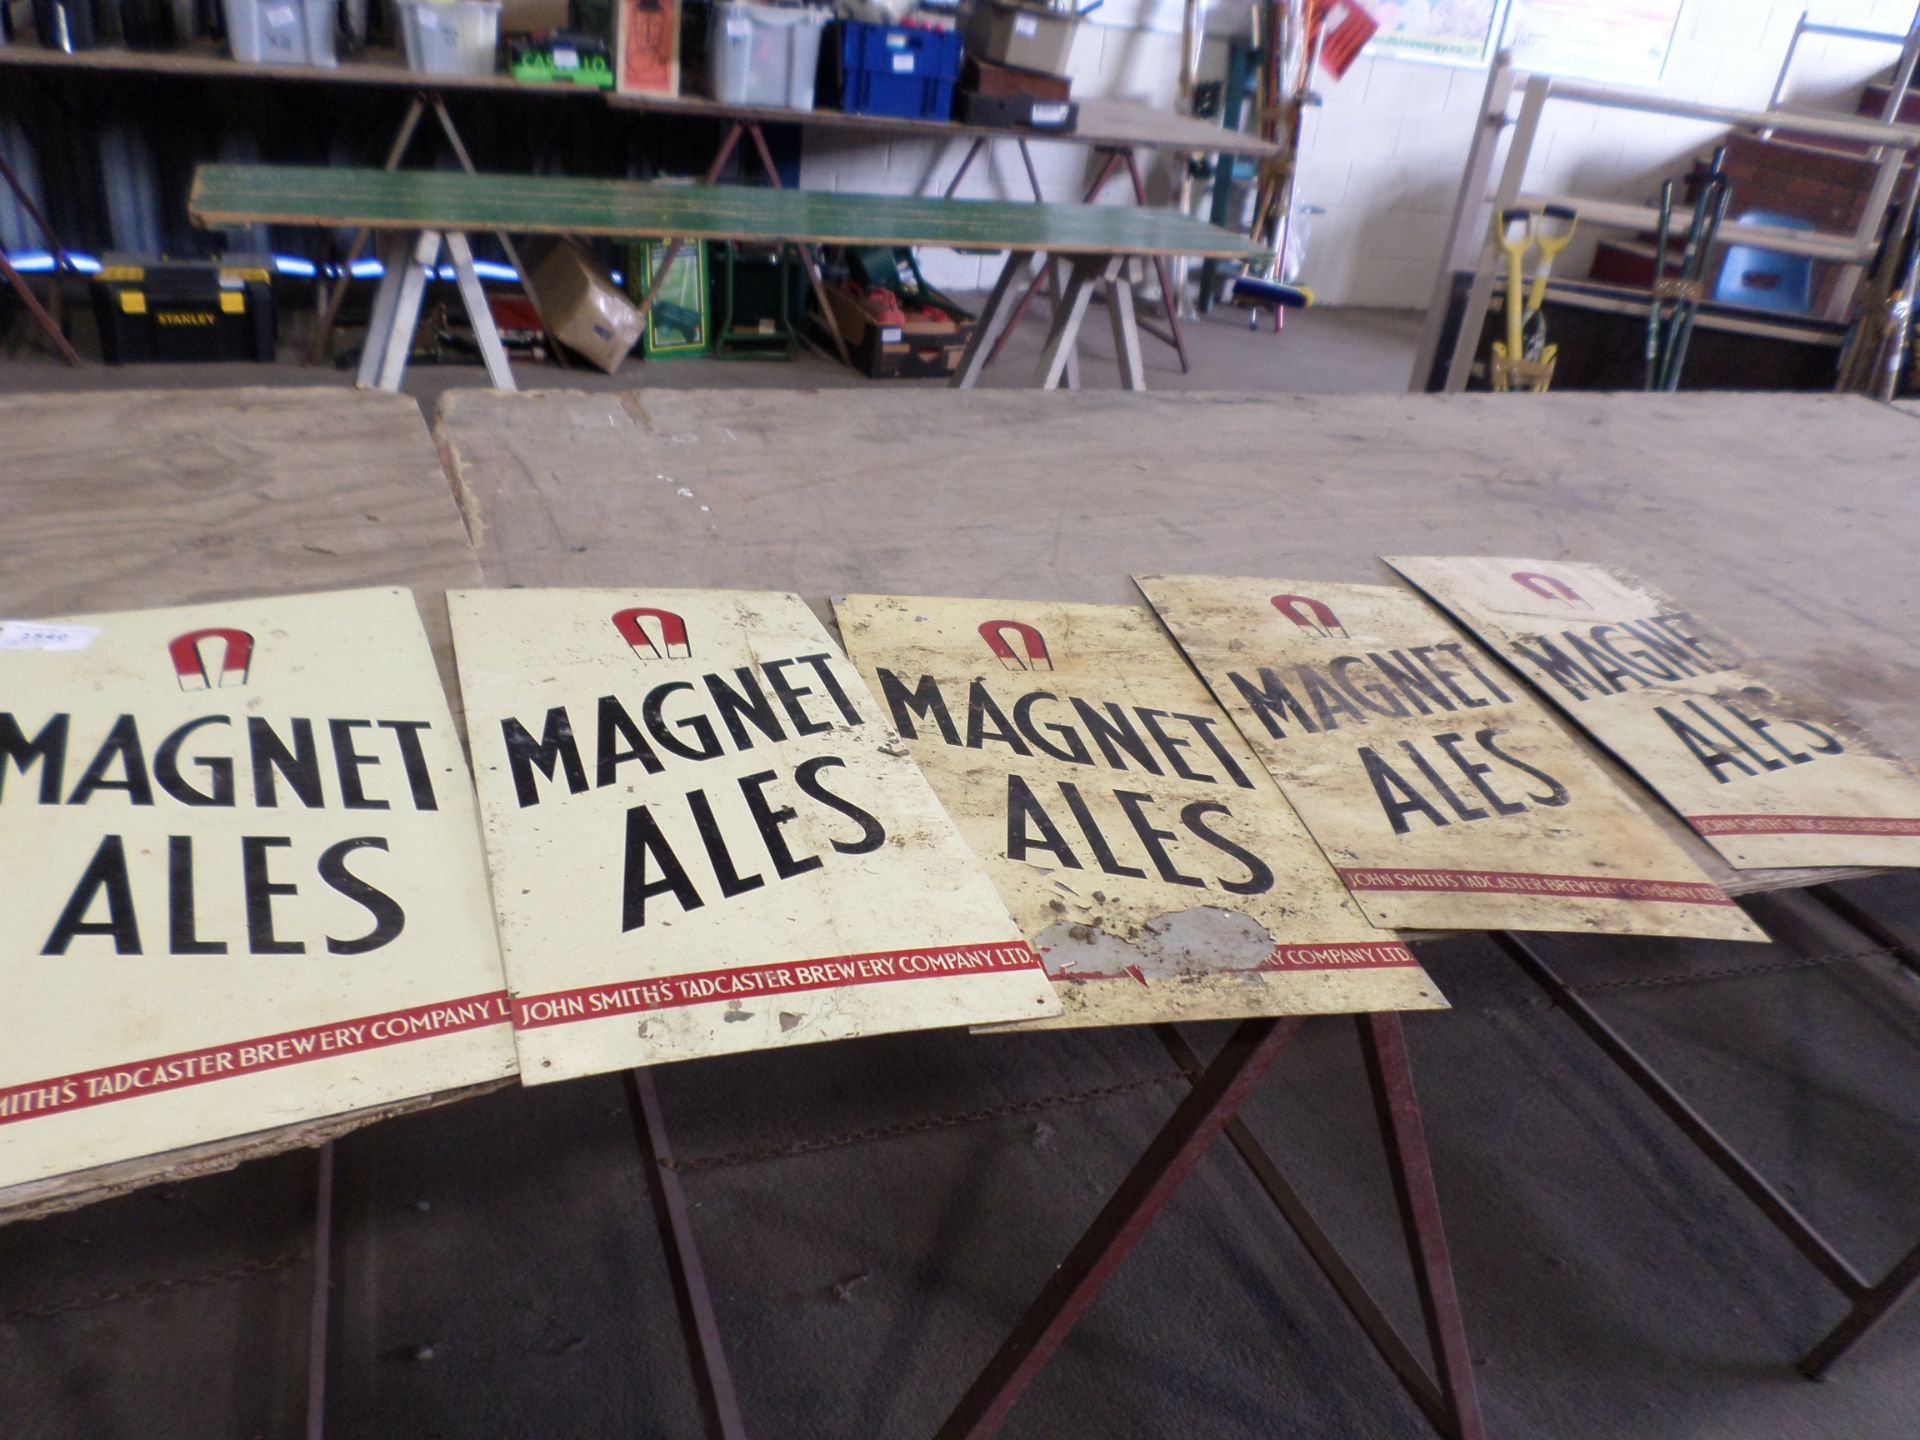 5 Magnet Ales metal signs